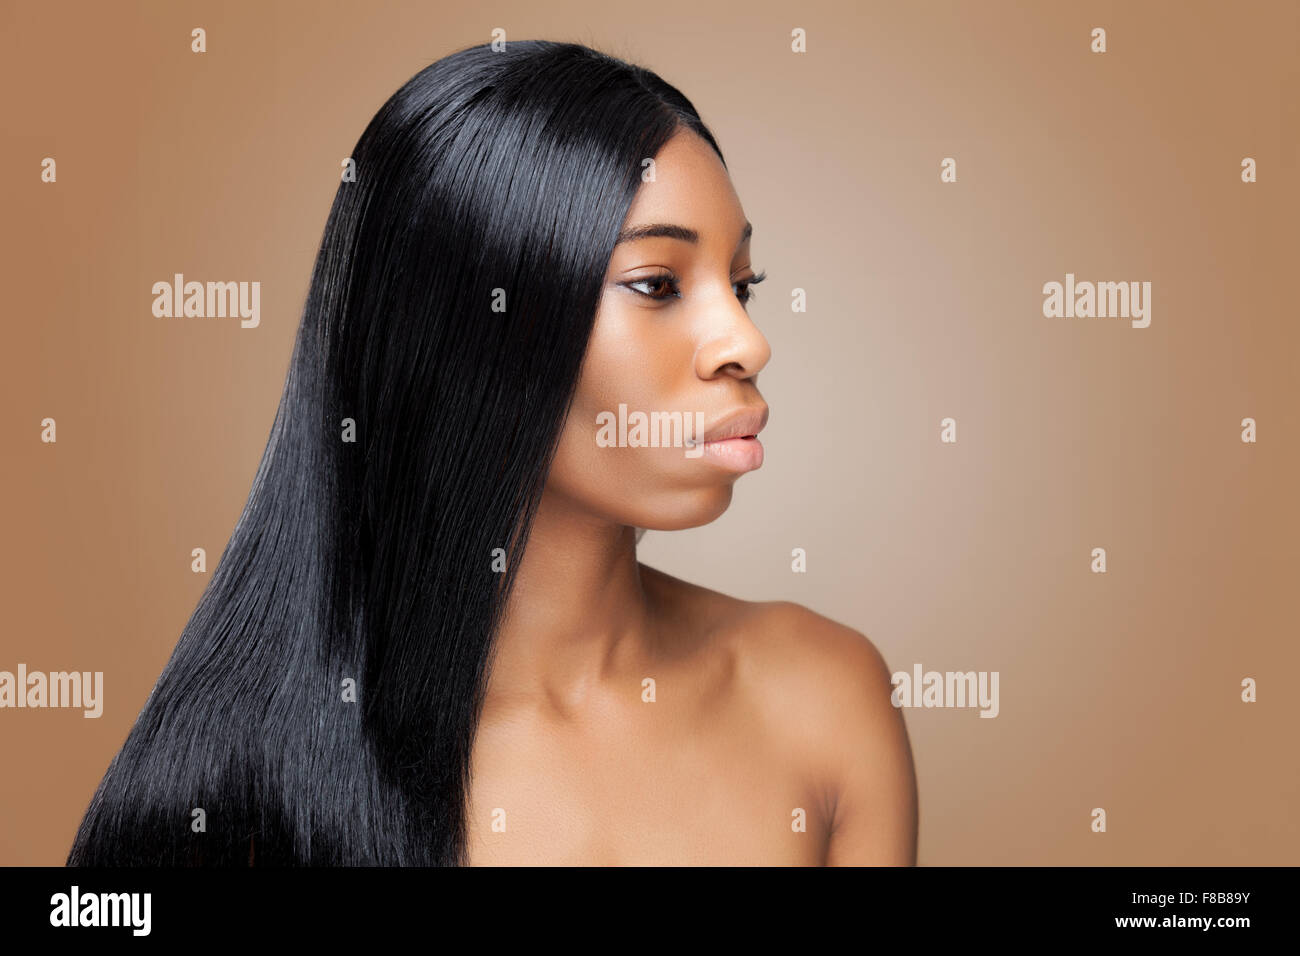 Belle jeune femme noire avec de longs cheveux raides Banque D'Images